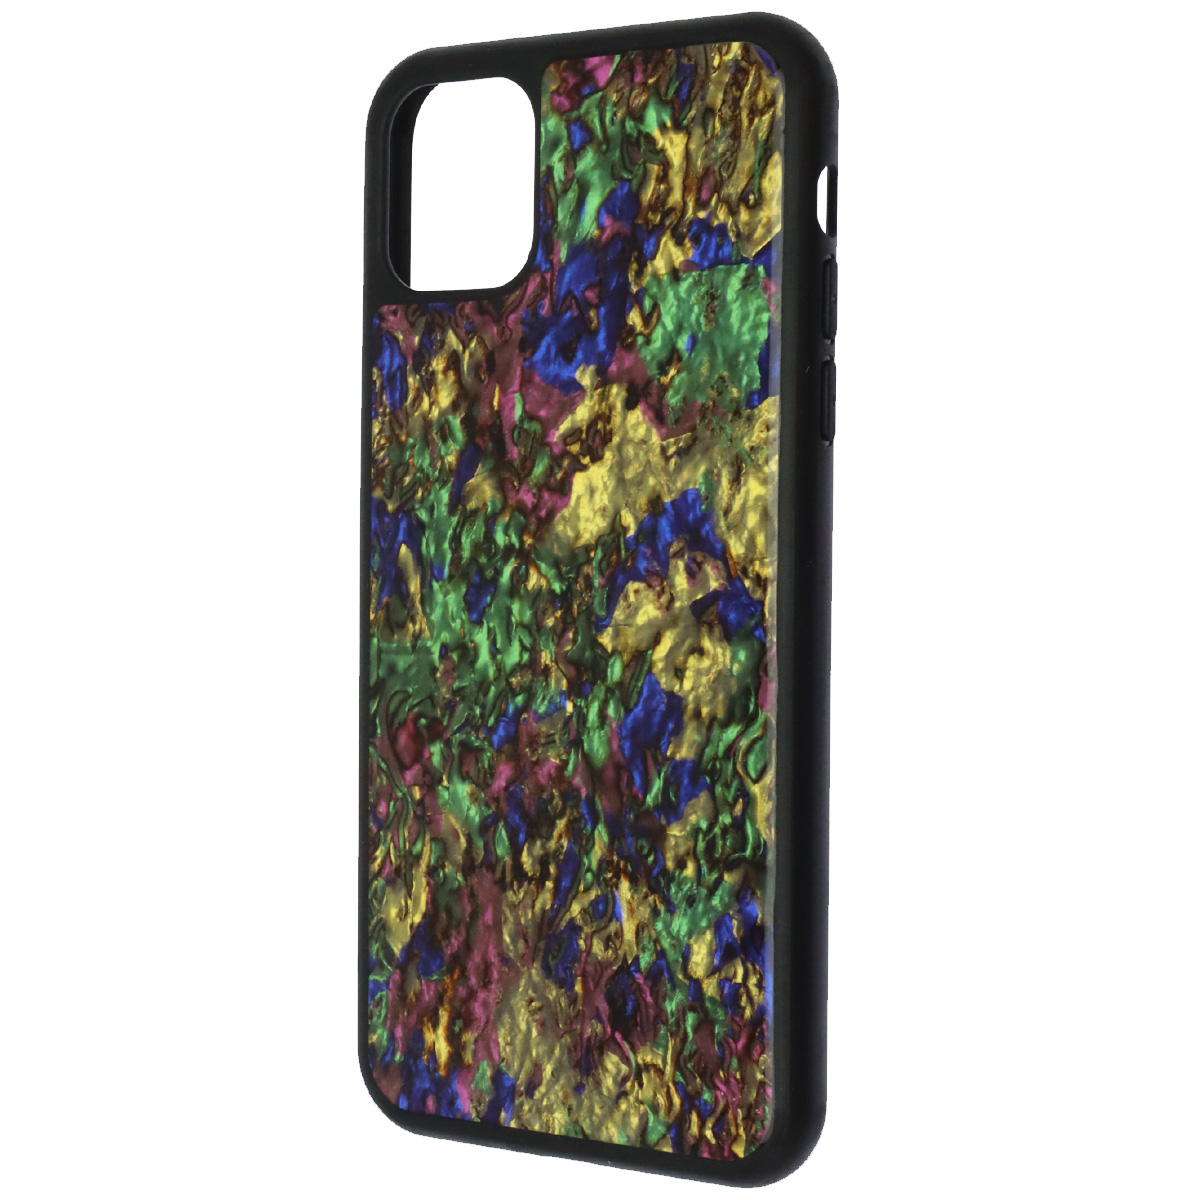 Чехол накладка K-DOO для APPLE iPhone 11 Pro Max, силикон, рисунок lava, цвет разноцветный